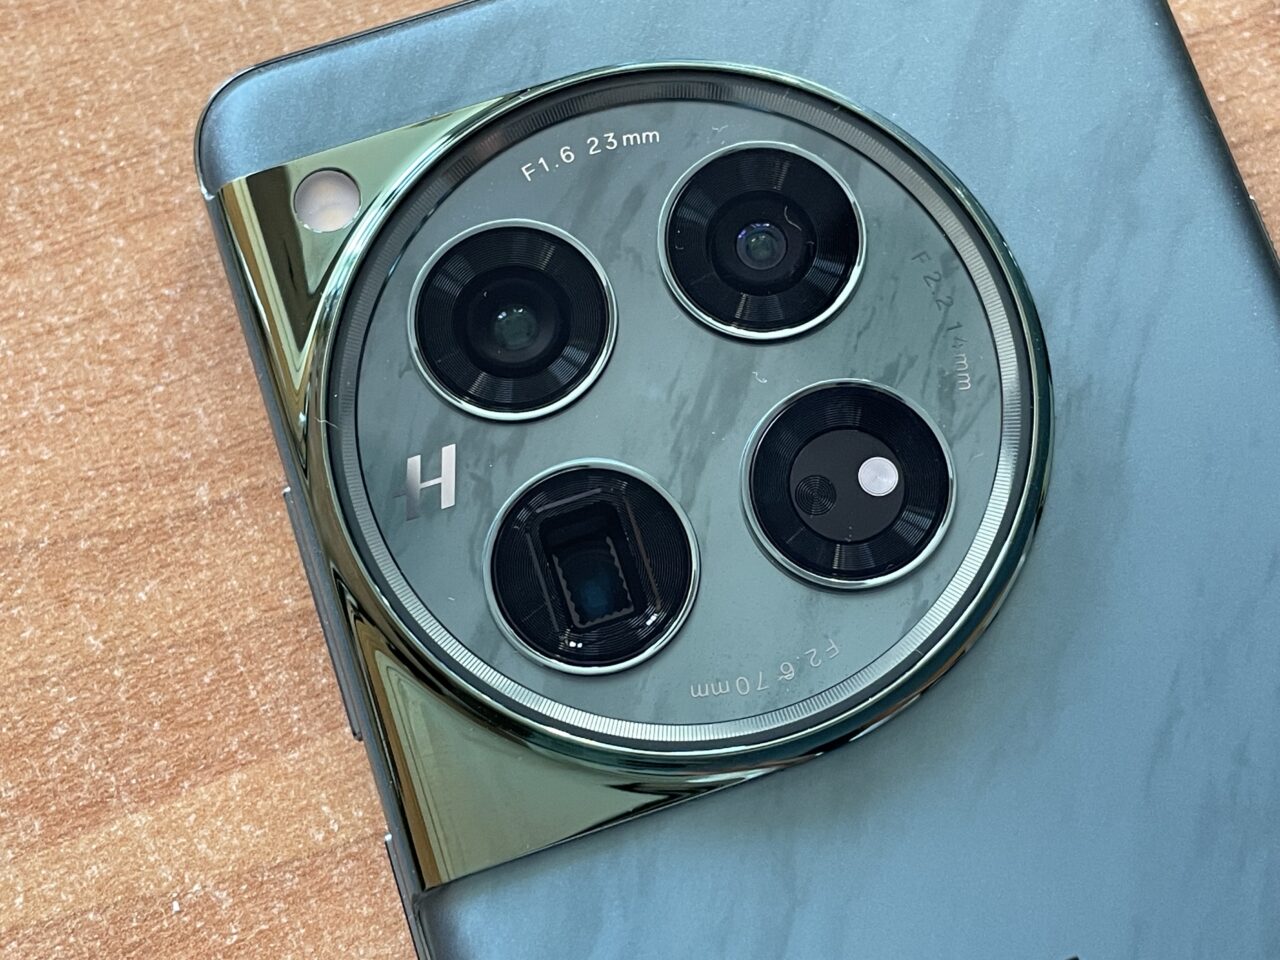 Smartphone verde com câmera com lente modular grande com diversas lentes e logotipo "H".